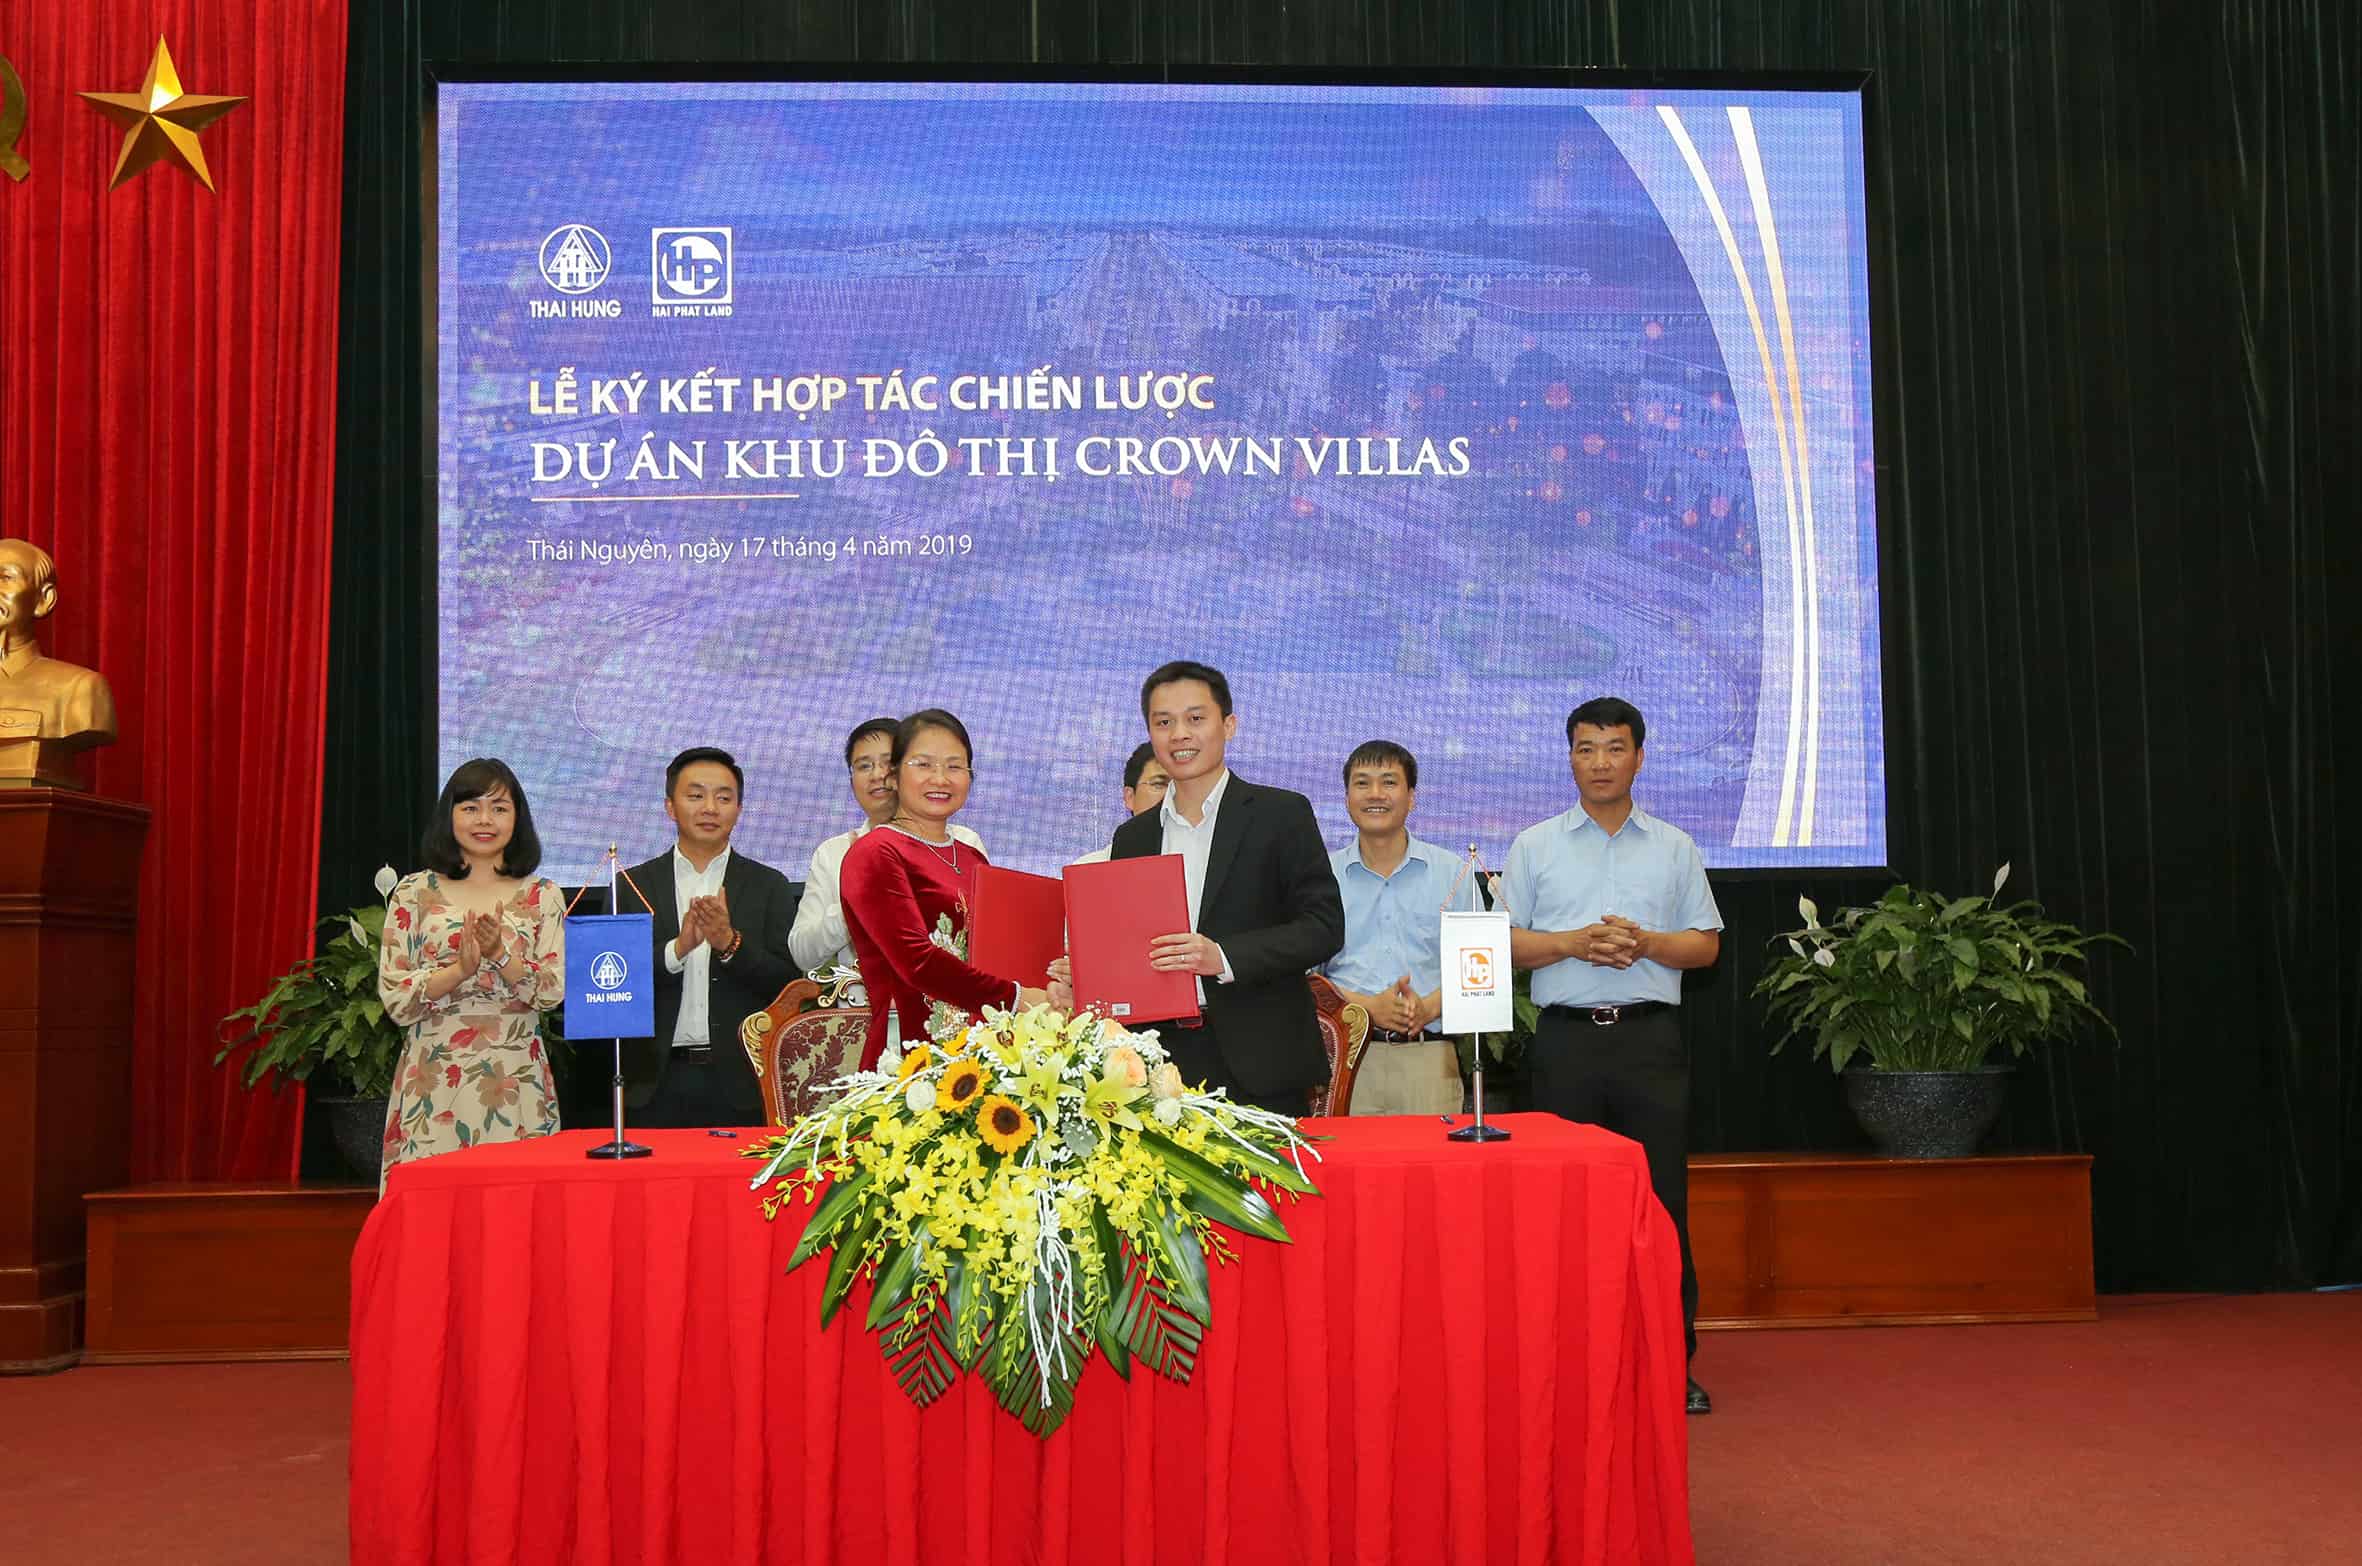 Đại diện Công ty Cổ phần Thương Mại Thái Hưng và đại diện Hải Phát Land thực hiện ký kết hợp tác chiến lược